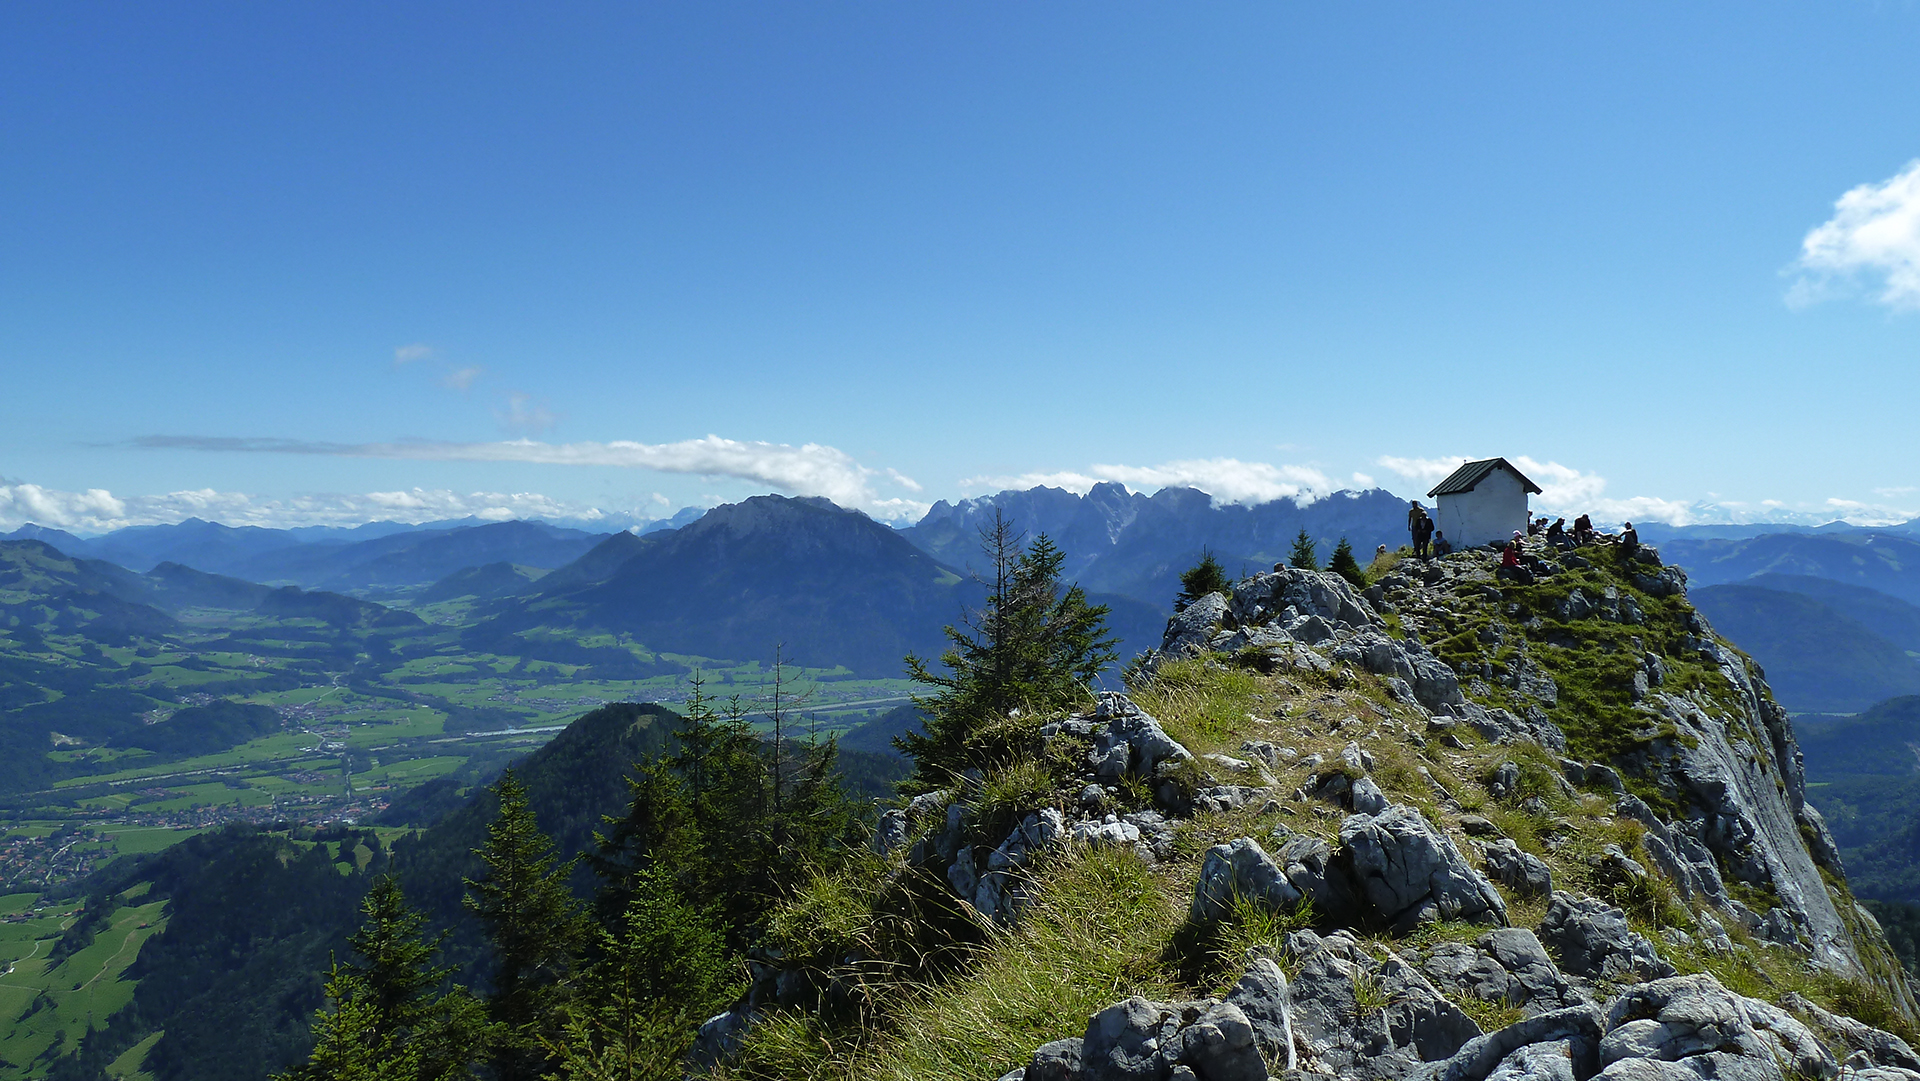 Von den Gipfeln der Berge aus sehen wir die wunderschönen bayerischen Alpen mit anderen Augen